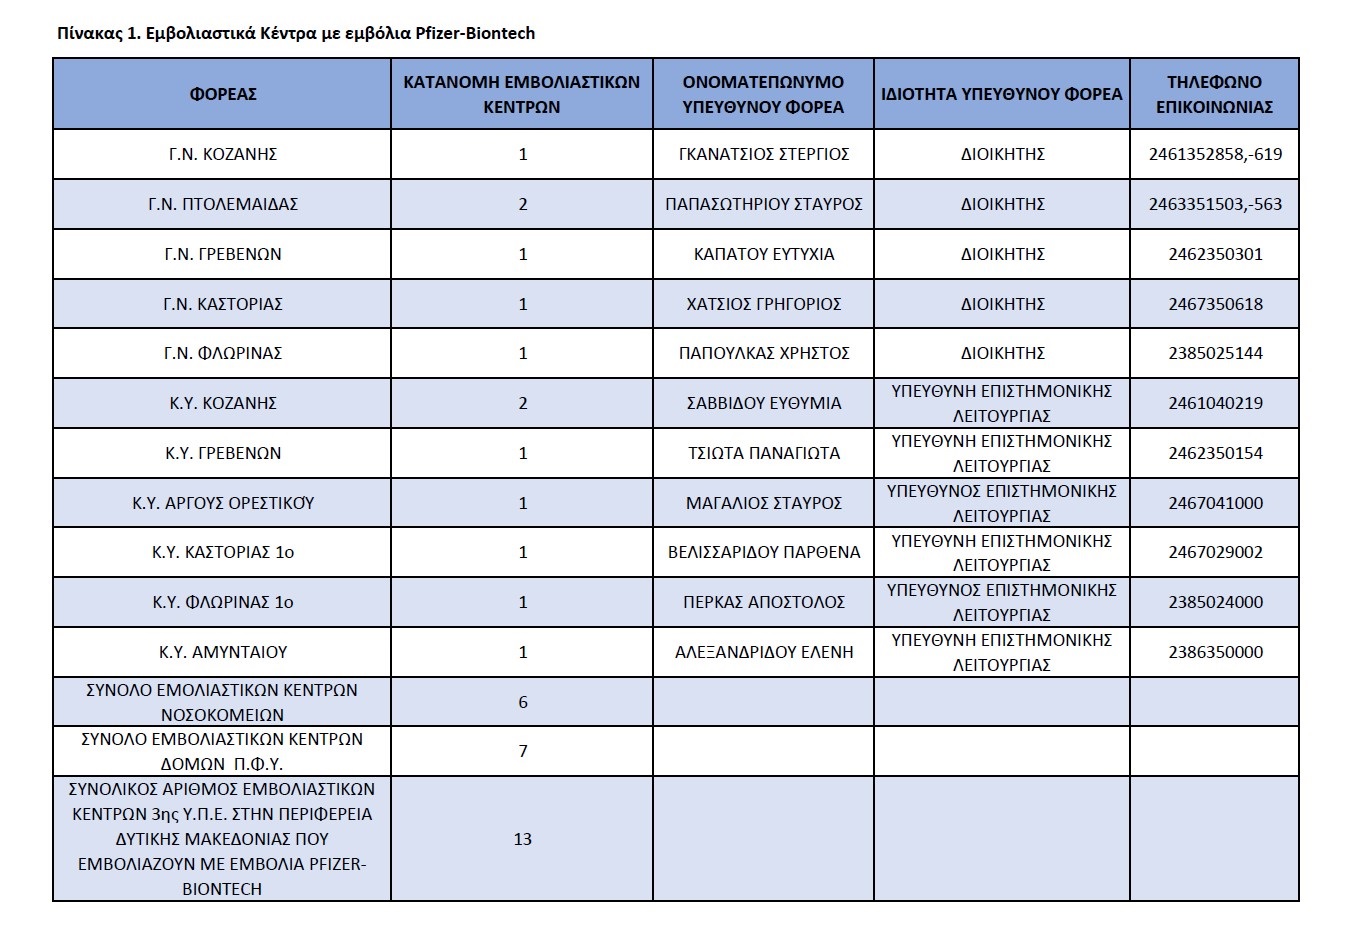 η λίστα όλων των εμβολιαστικών κέντρων της Δυτικής Μακεδονίας προς ενημέρωση όλων των ενδιαφερομένων πολιτών